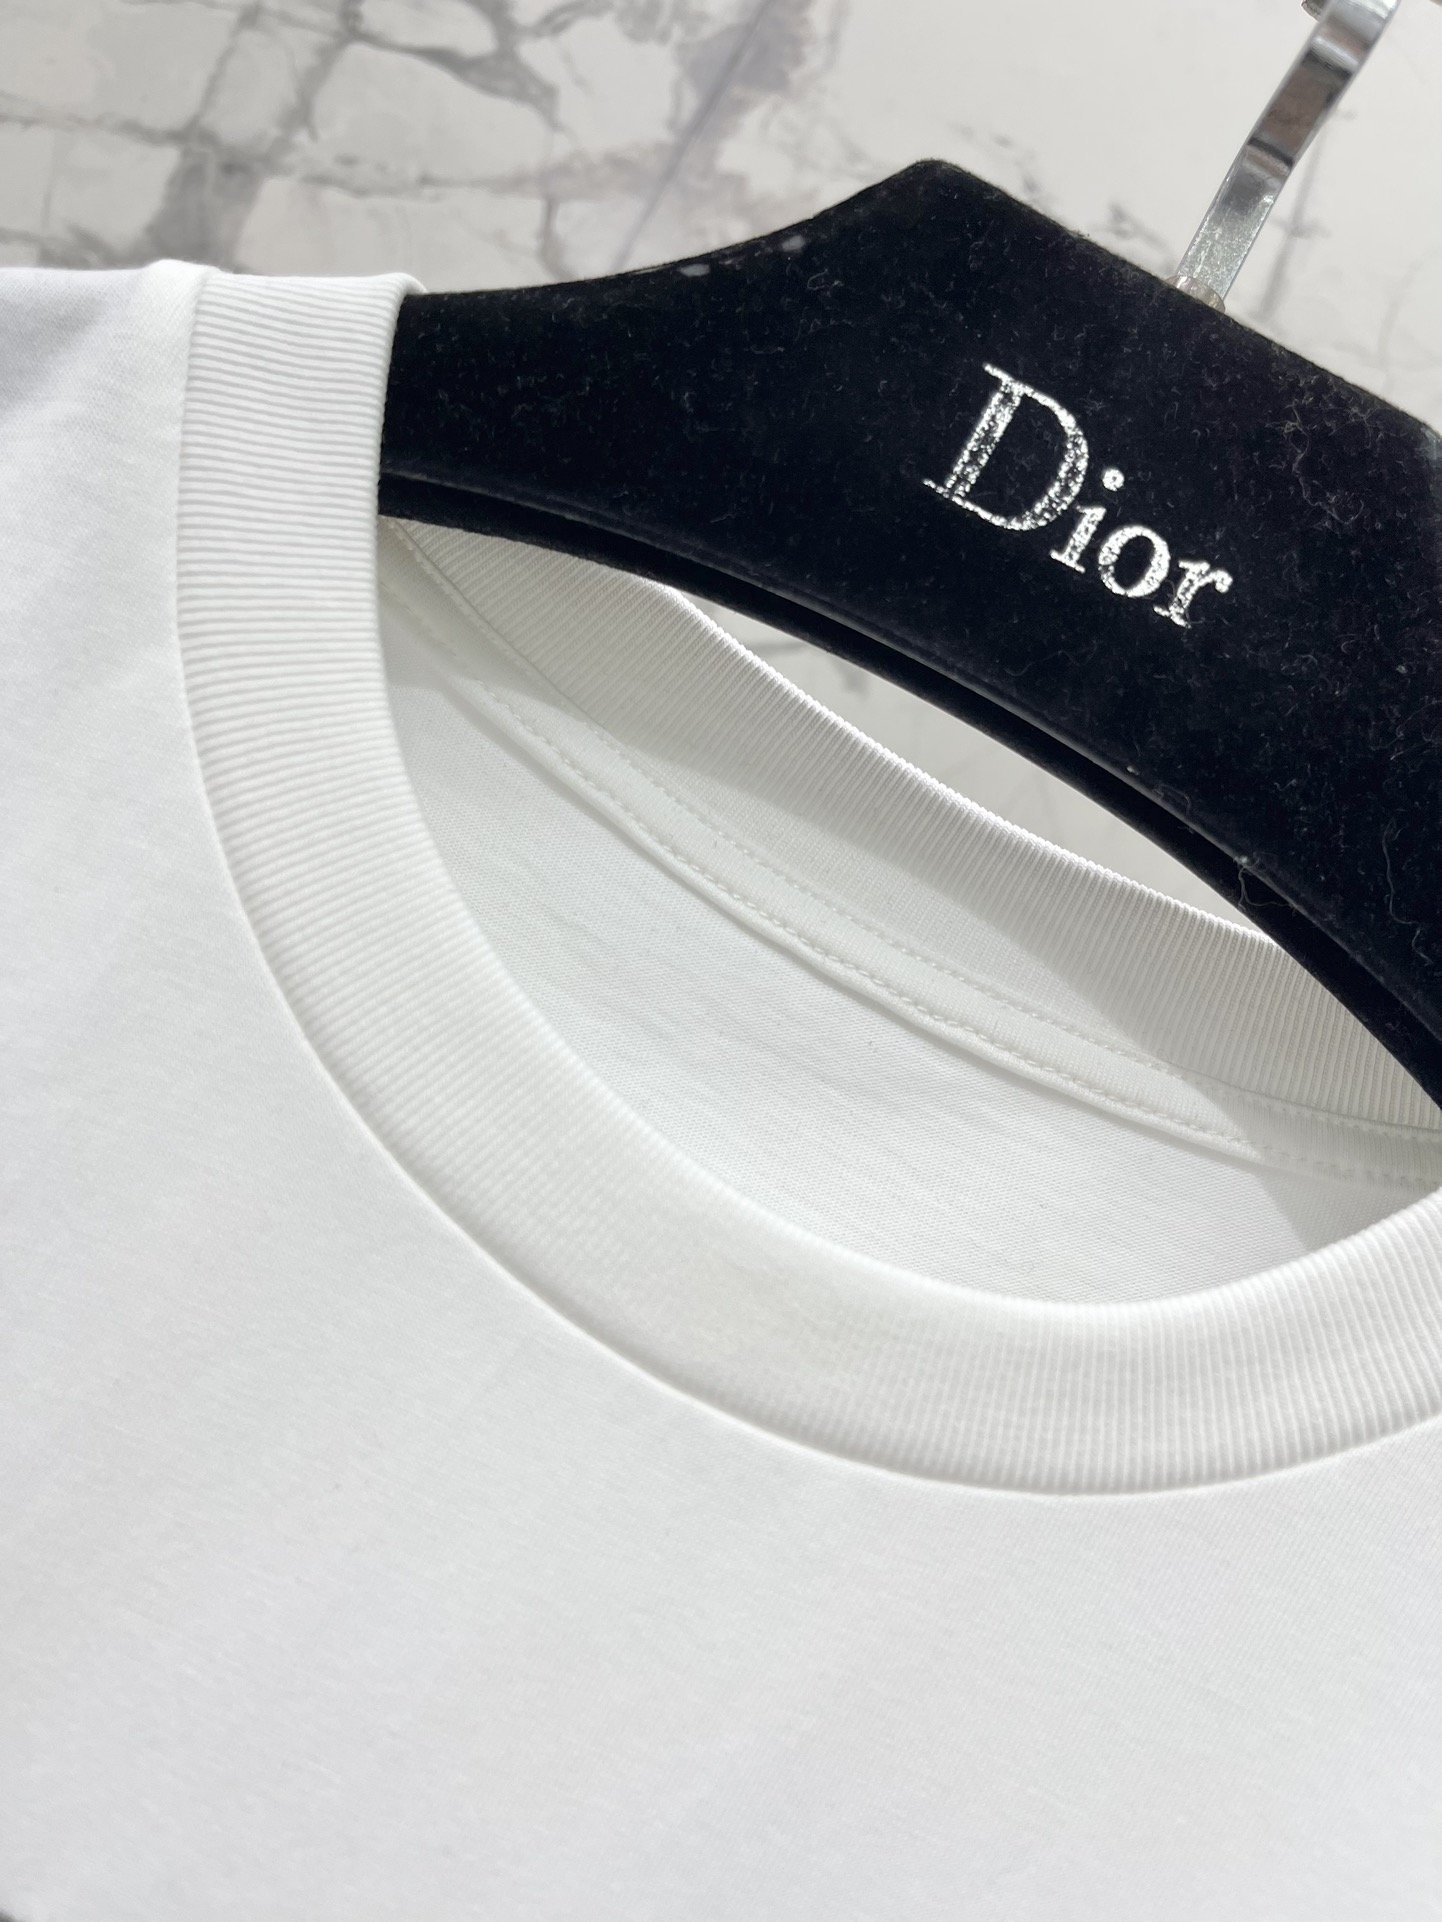 *迪奥这款短袖采用了优质棉质面料柔软透气贴身穿着超级舒服.精致的DiorLogo设计简洁大方彰显出低调的